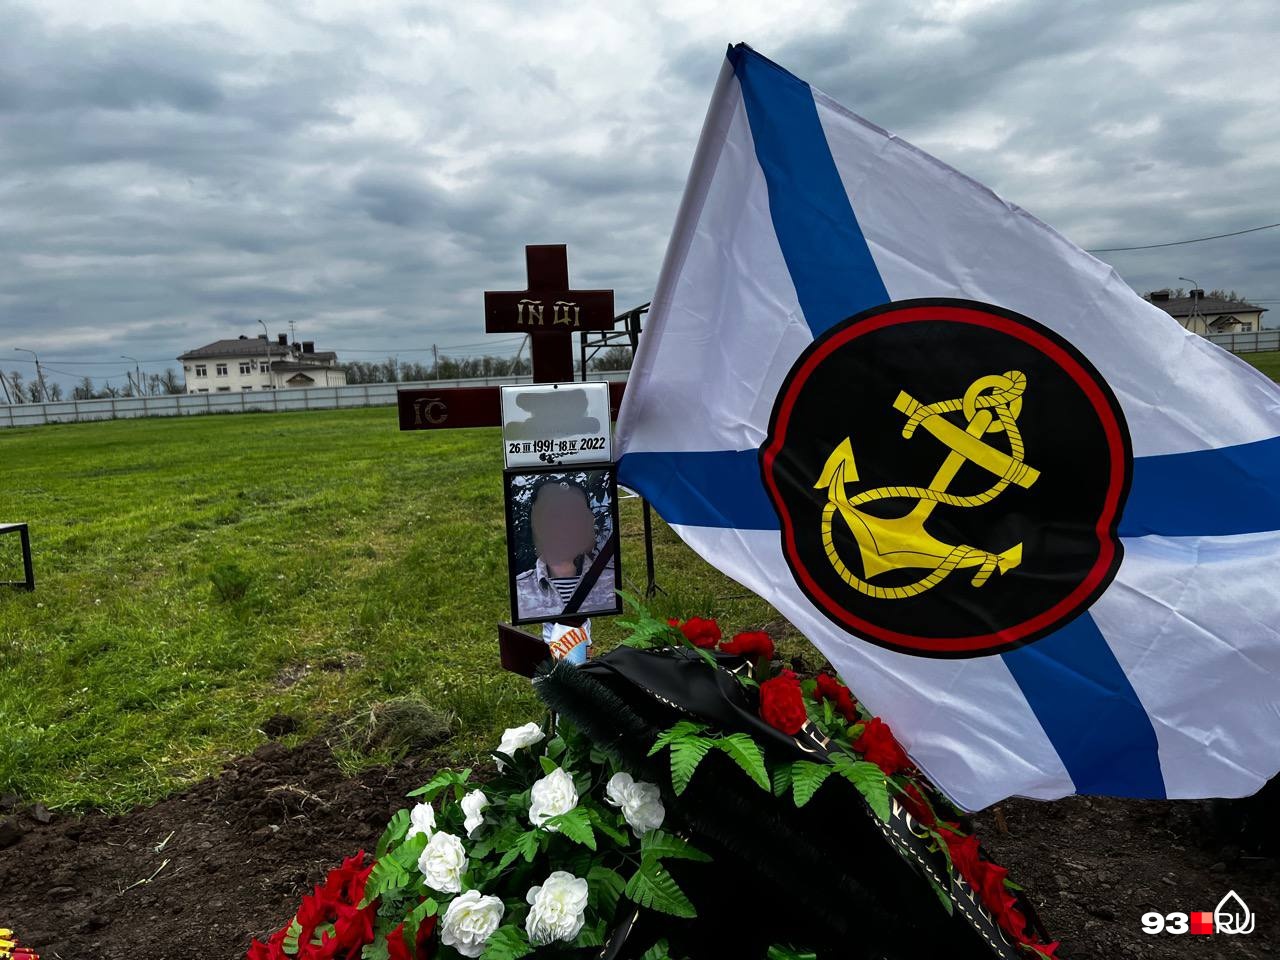 Над могилой молодого человека 1991 года рождения развевается флаг морской пехоты ВМФ России